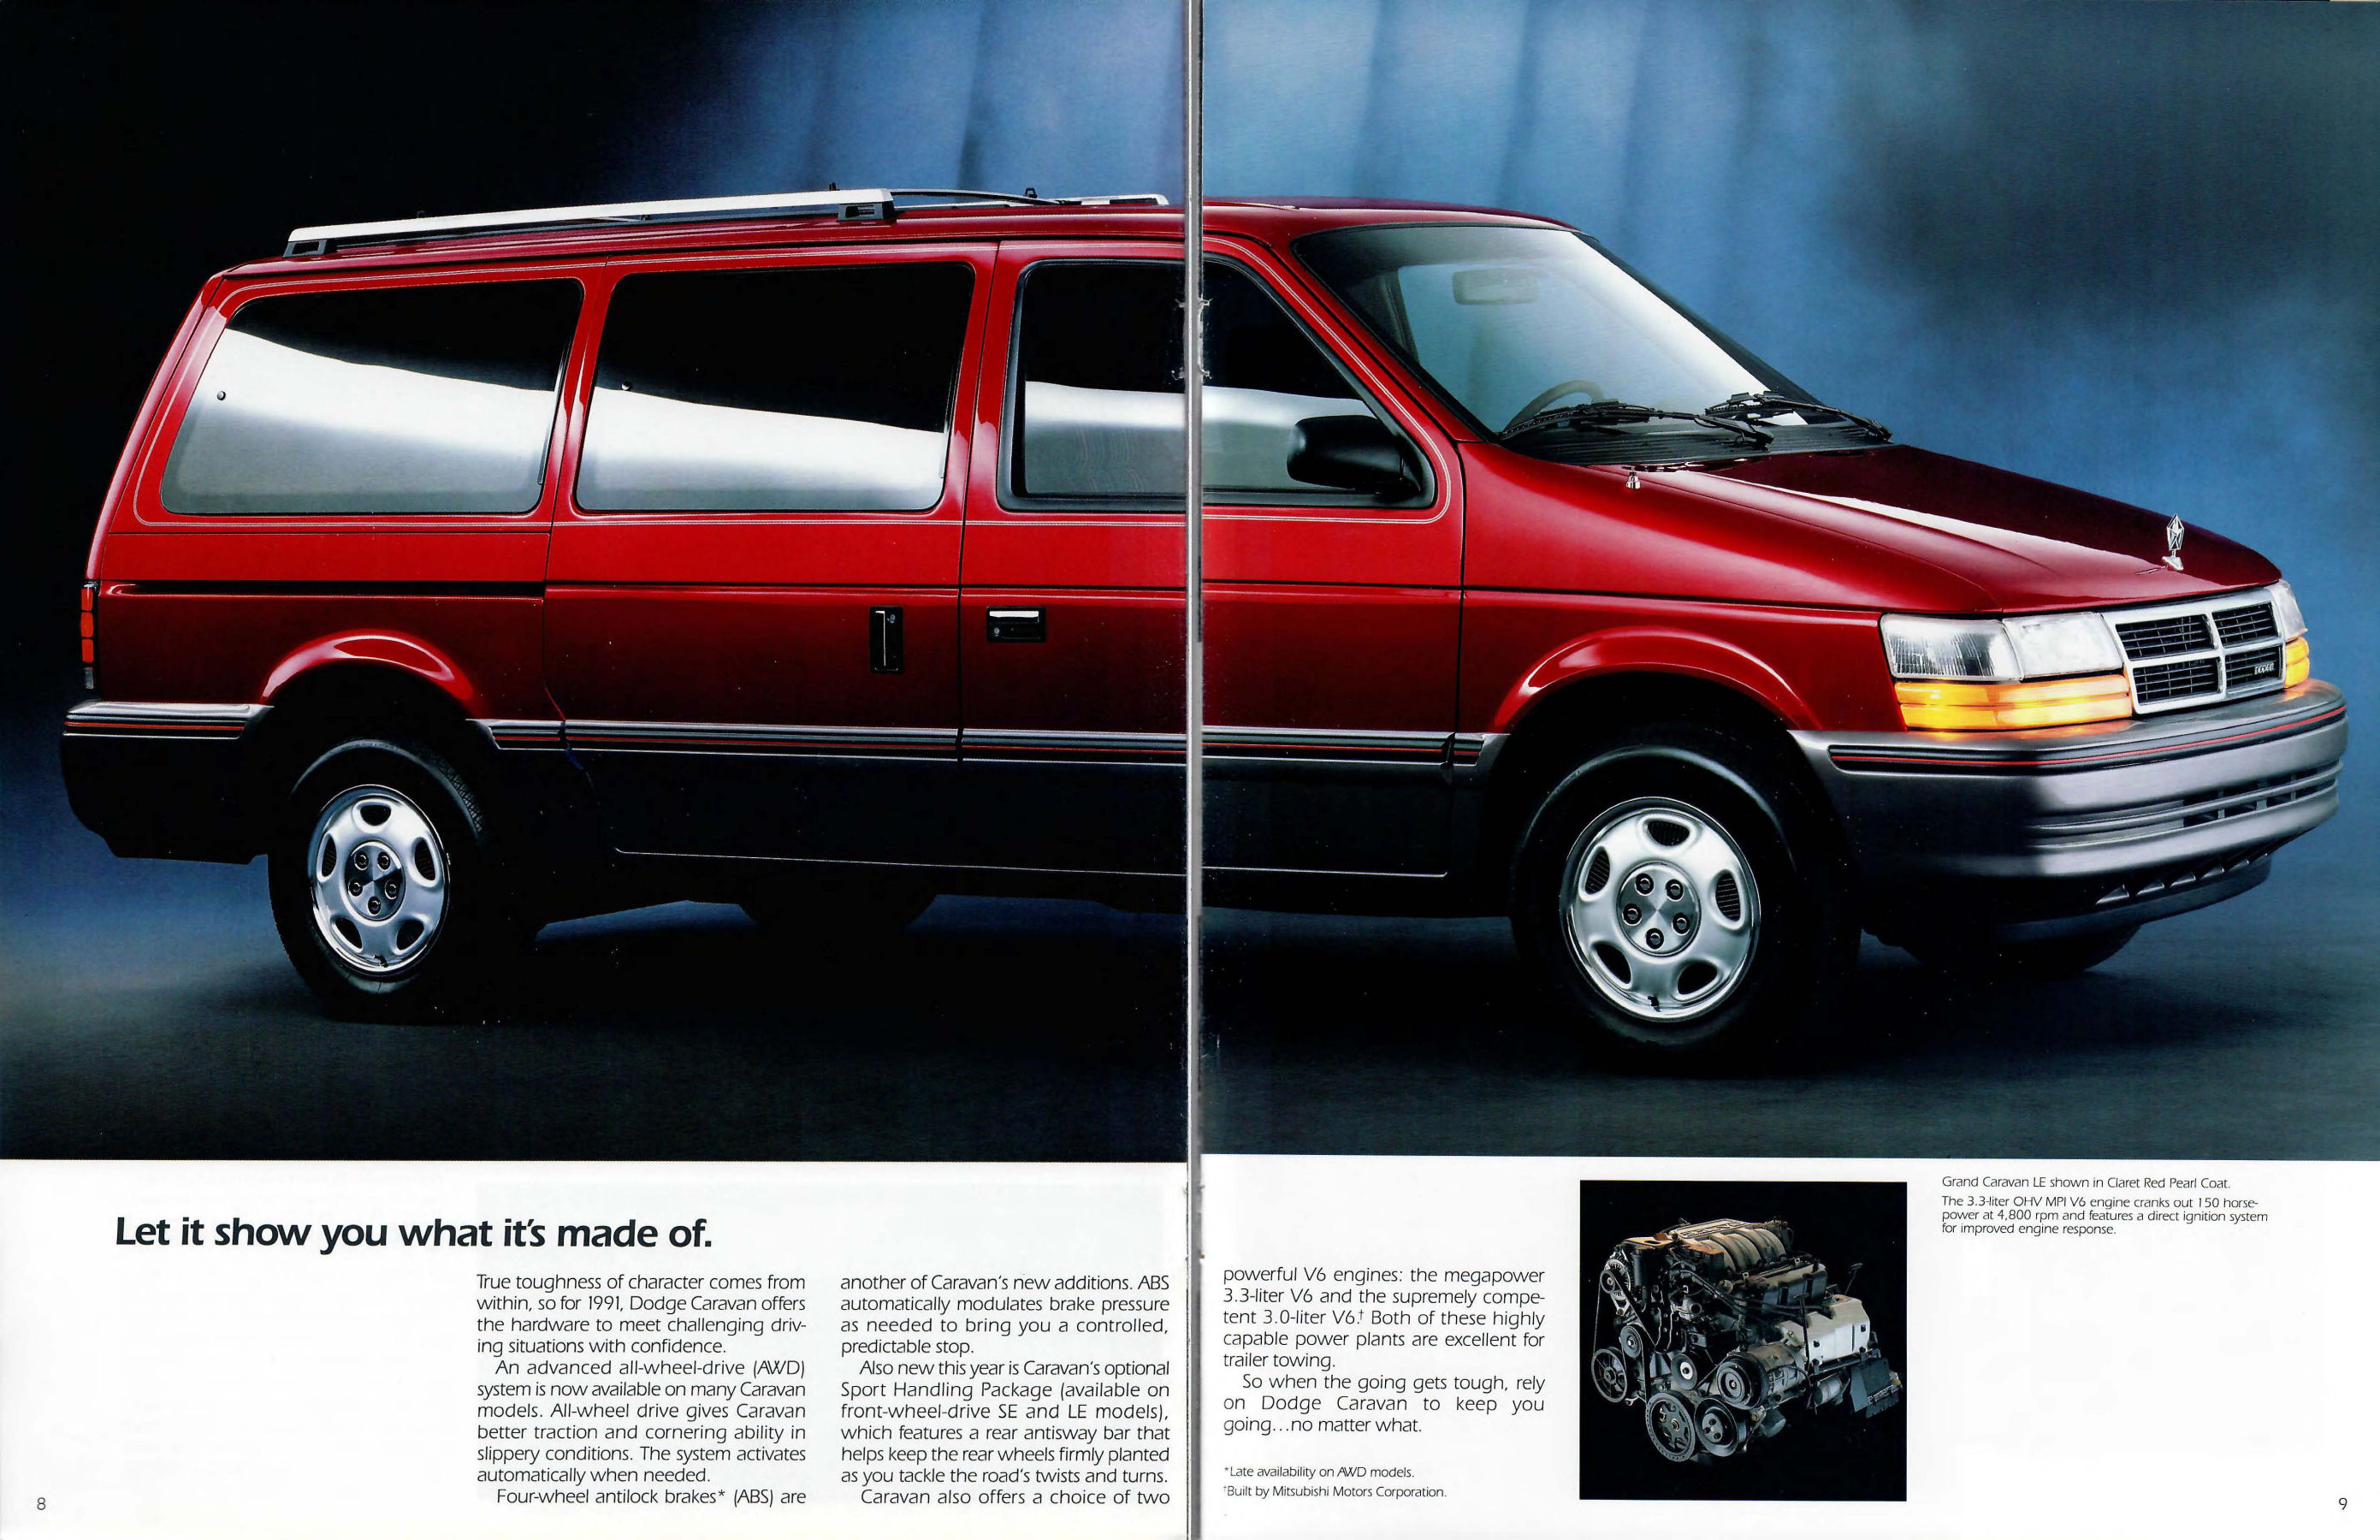 1991 Dodge Caravan-08-09